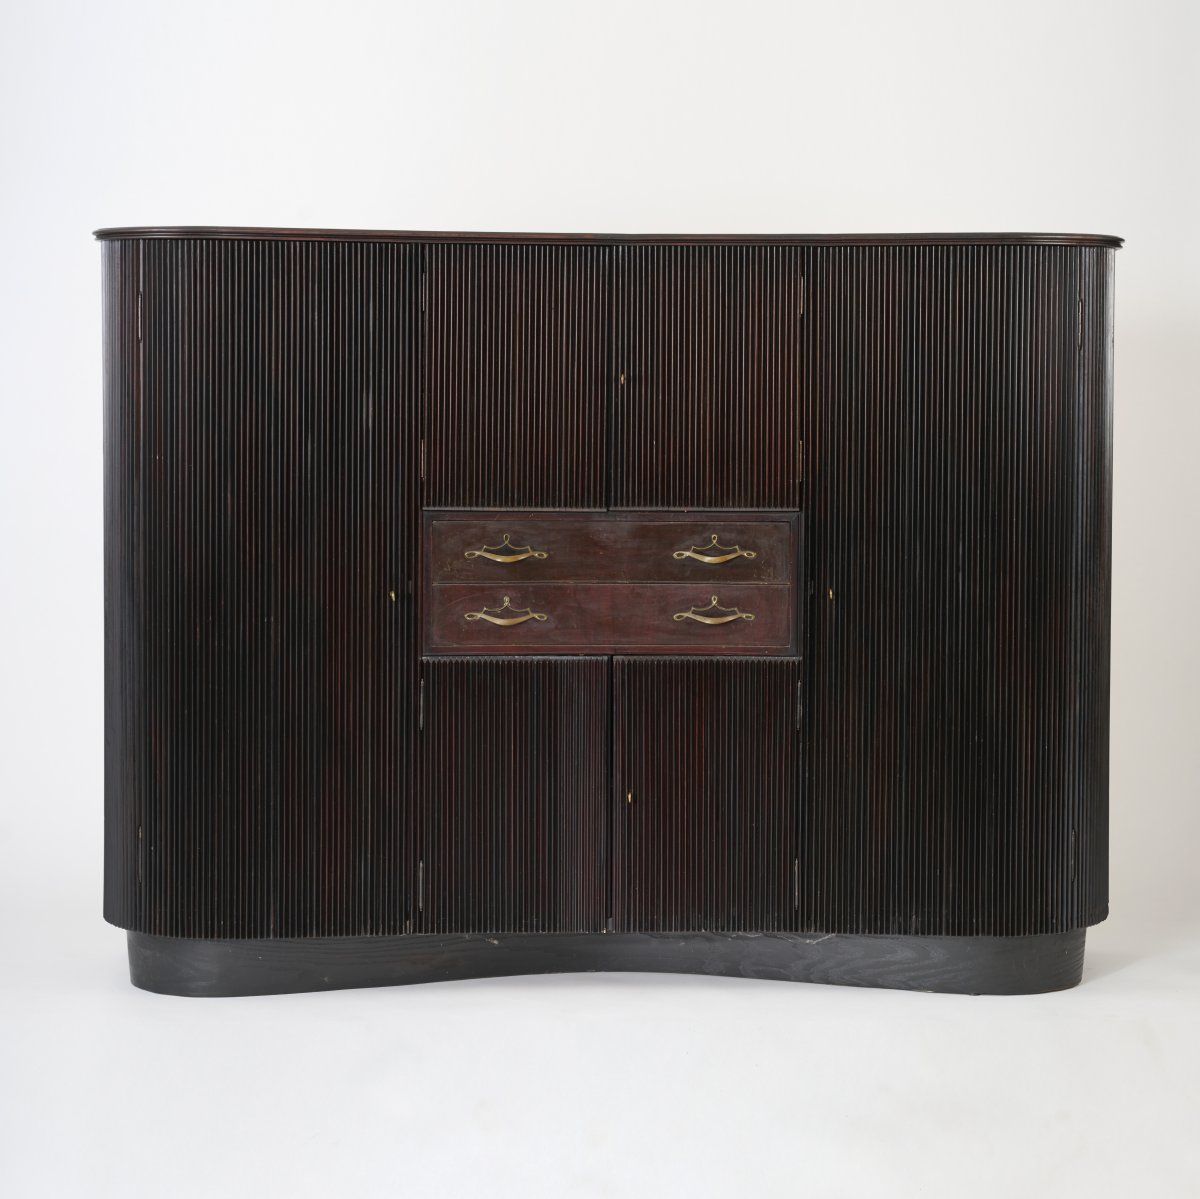 Osvaldo Borsani Großes Sideboard / Kleiderschrank, 1945
H. 159 x 216 x 50 cm.
AB&hellip;